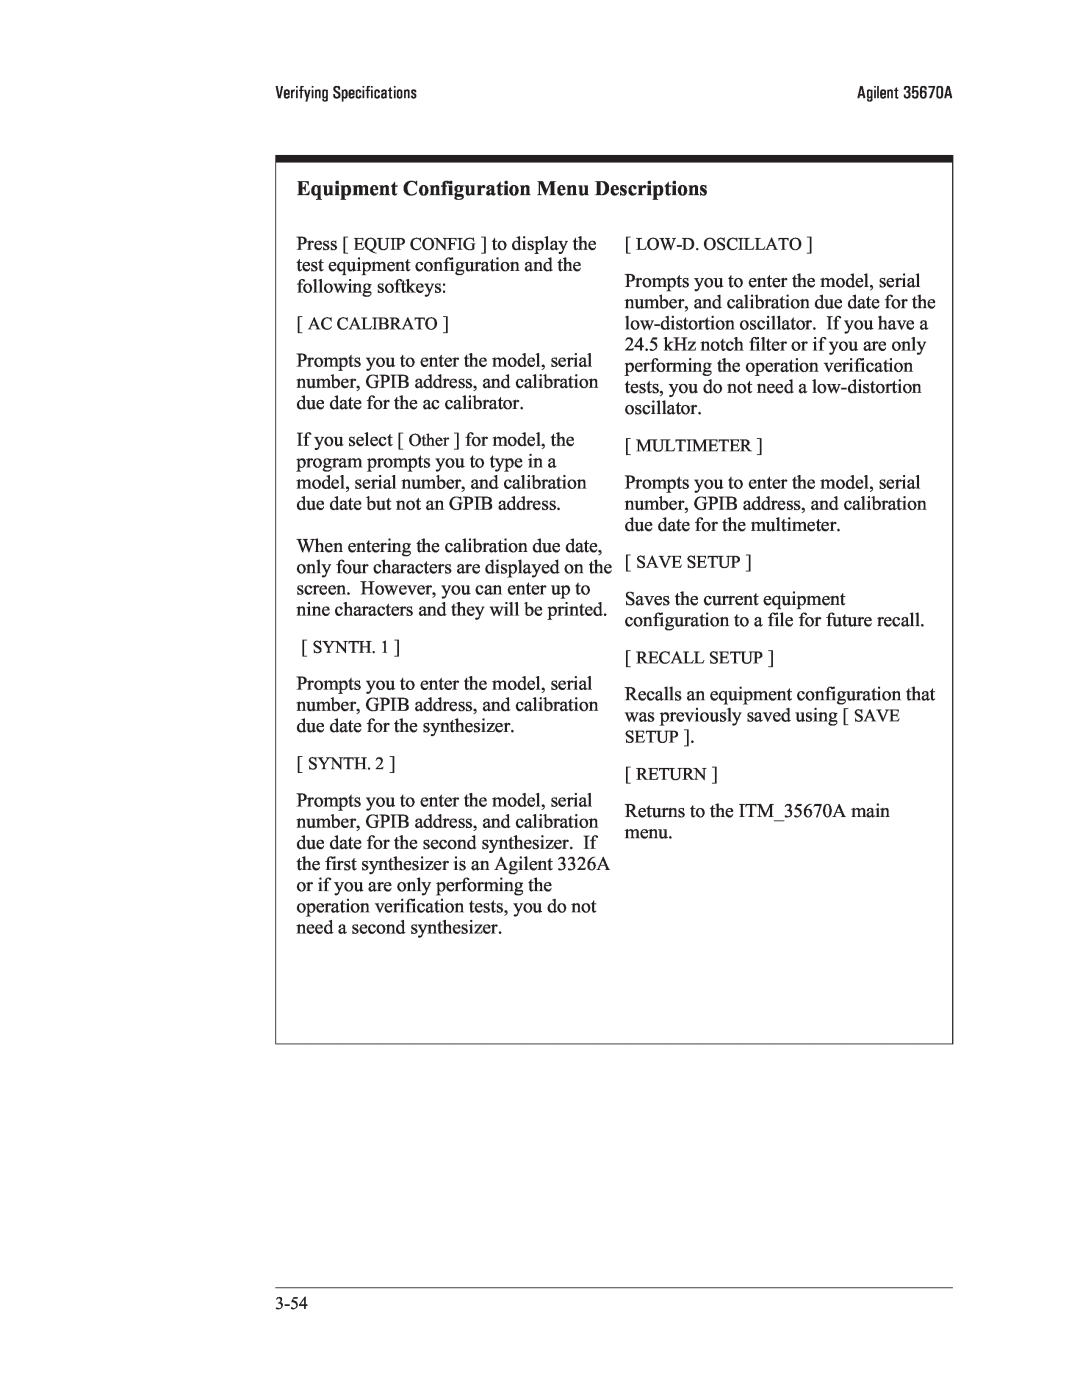 Agilent Technologies 35670-90066 manual Equipment Configuration Menu Descriptions 